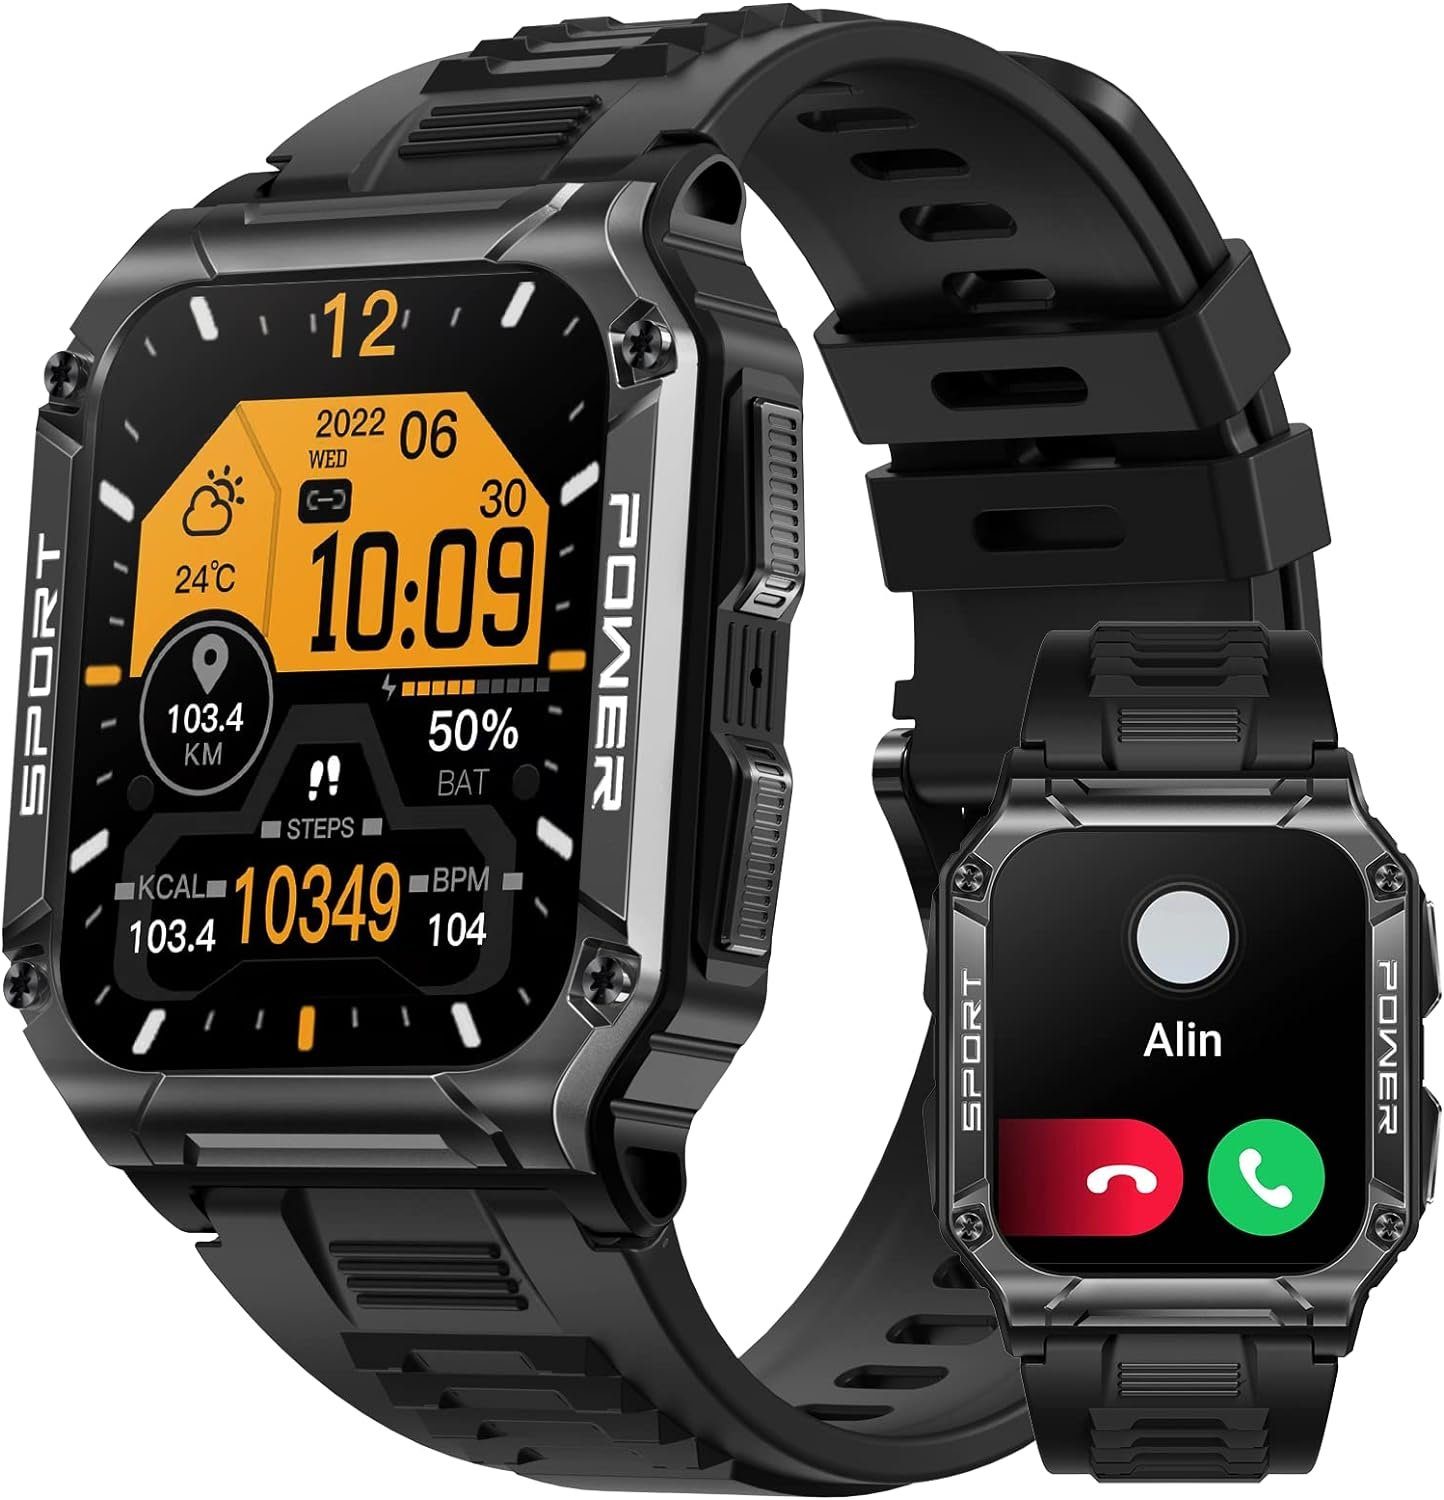 PYRODUM NX6 Fur Herren mit Telefonfunktion,Fitness Smartwatch (1.95 Zoll, Andriod iOS), mit Blutdruckmessung,Herzfrequenzmessung,Schrittzähler 100+ Sport modi